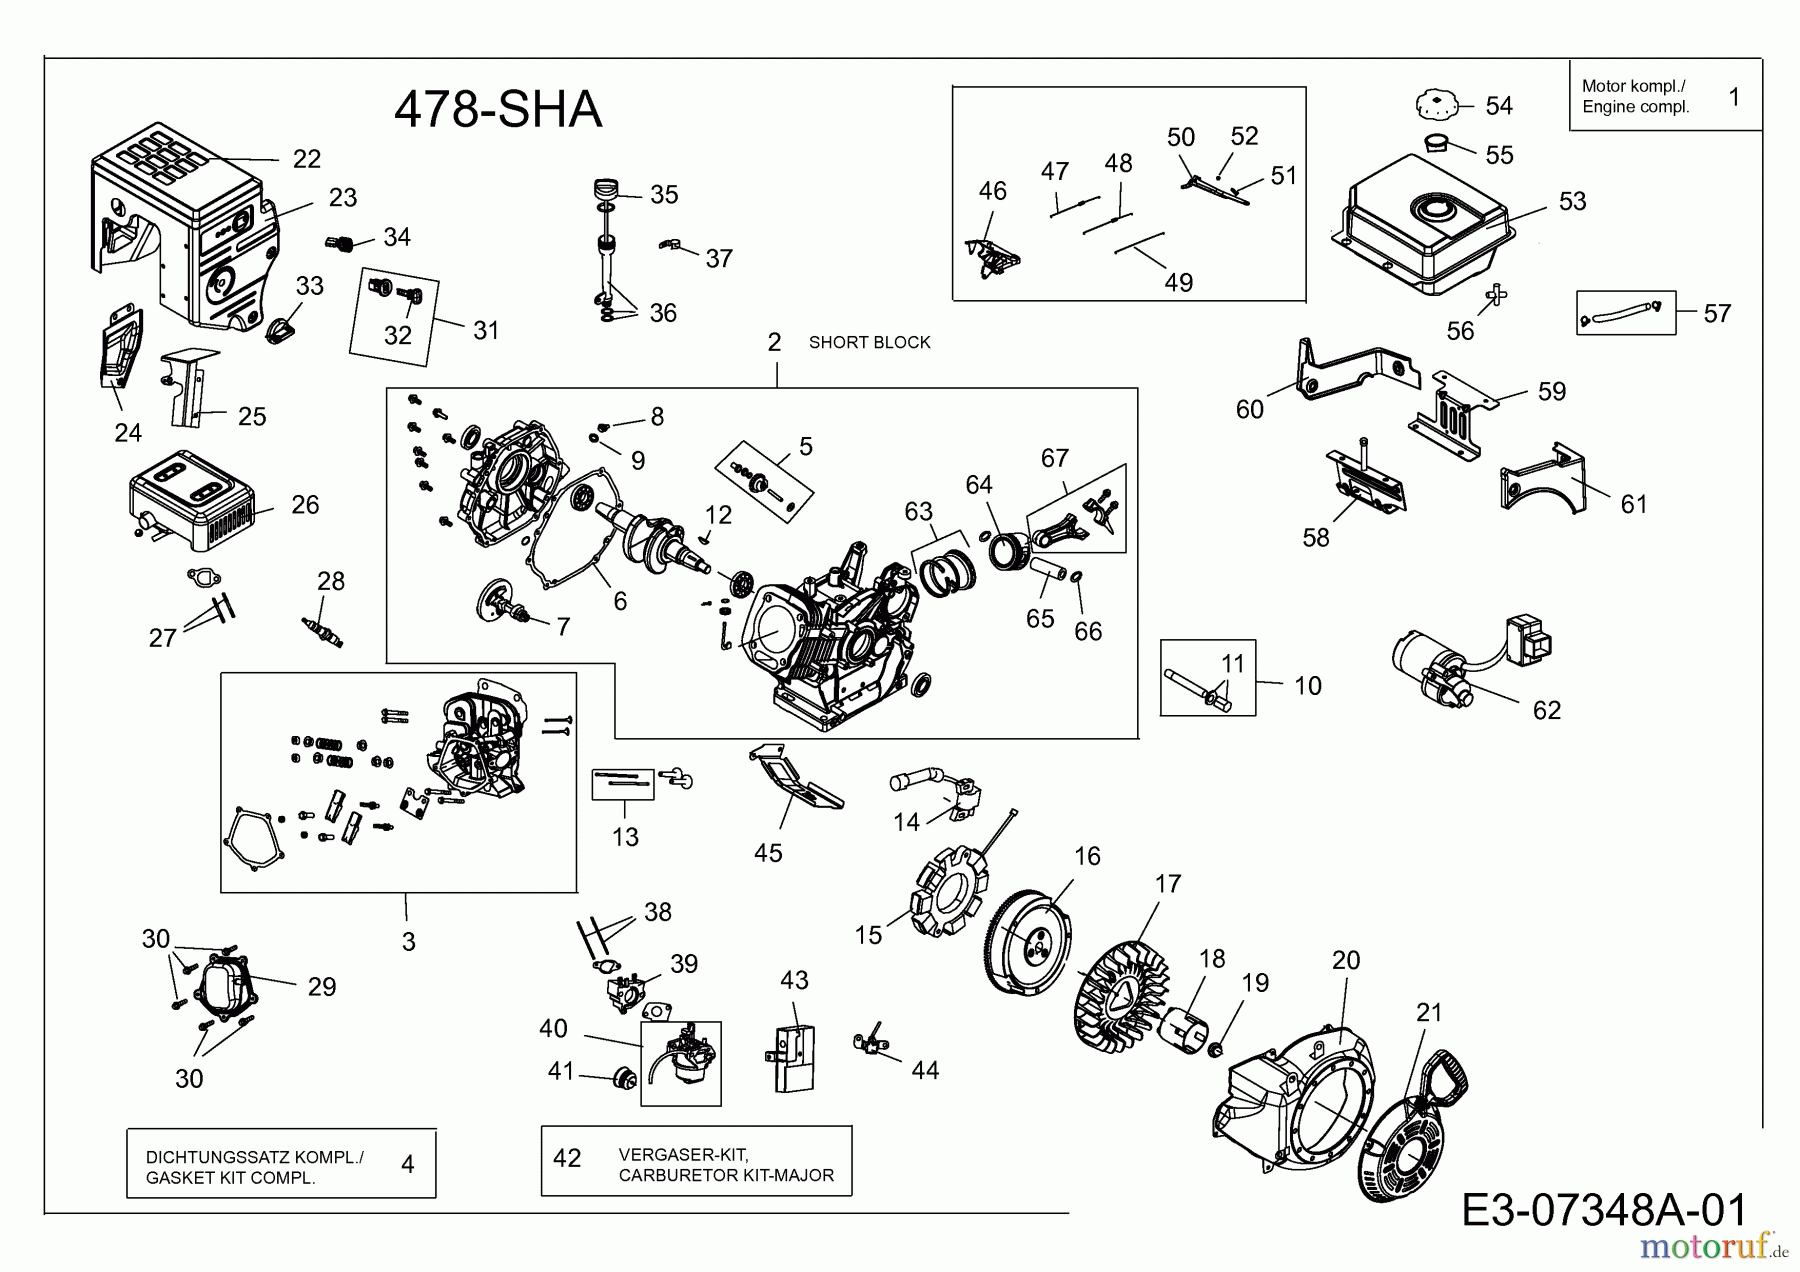  MTD-Motoren MTD horizontal 478-SHA 752Z478-SHA  (2012) Motor